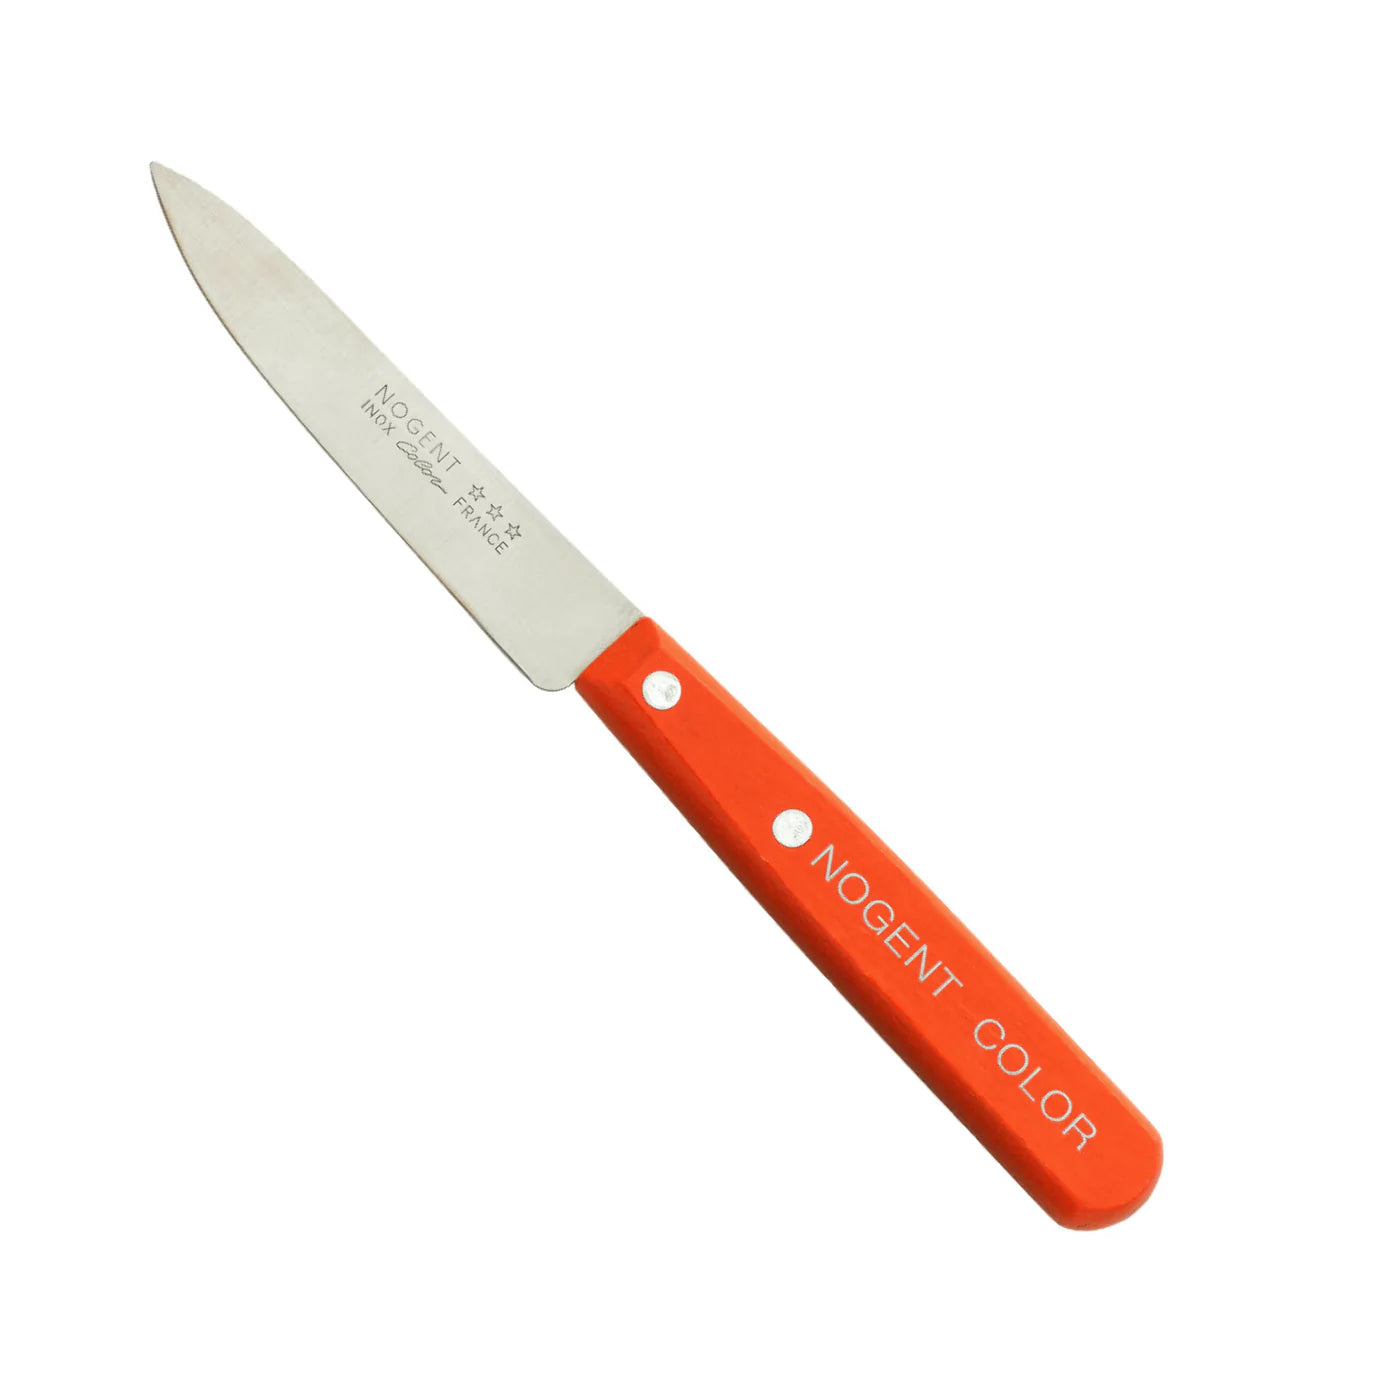 Classic Paring Kitchen Knife by Nogent - STRAIGHT blade Kitchen Nogent Tangerine Orange Prettycleanshop